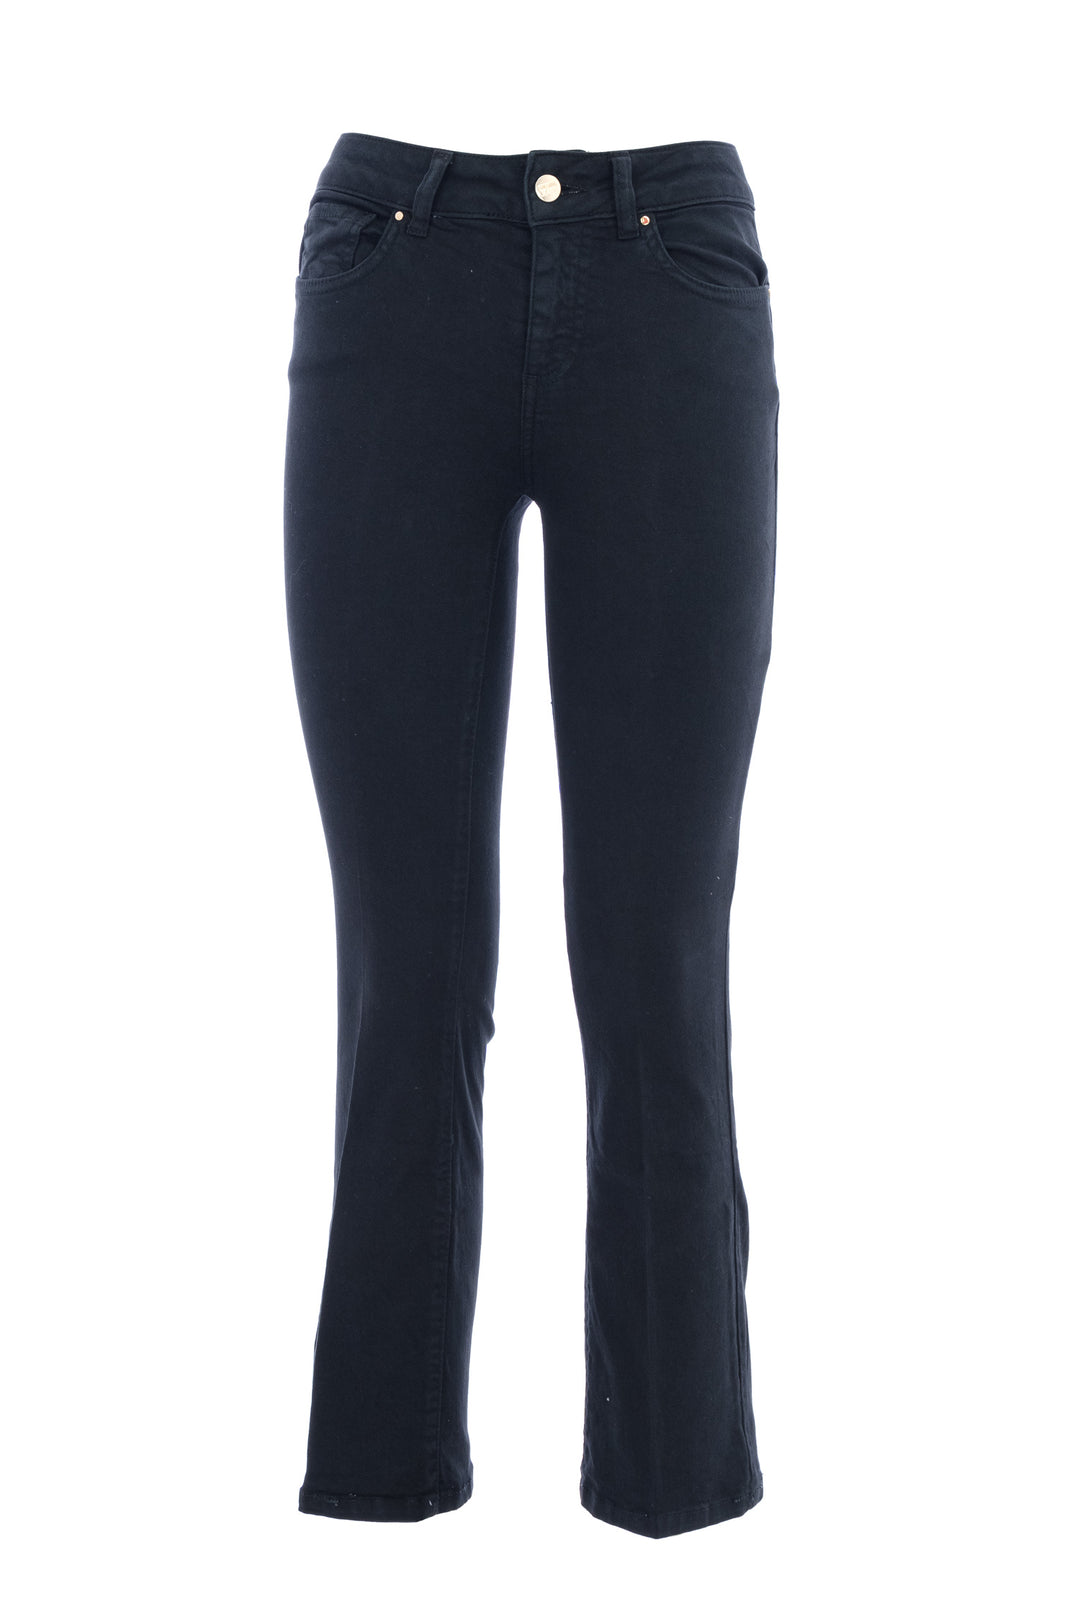 FRACOMINA Jeans Bella flare cropped in sofisticato denim stretch nero - Mancinelli 1954